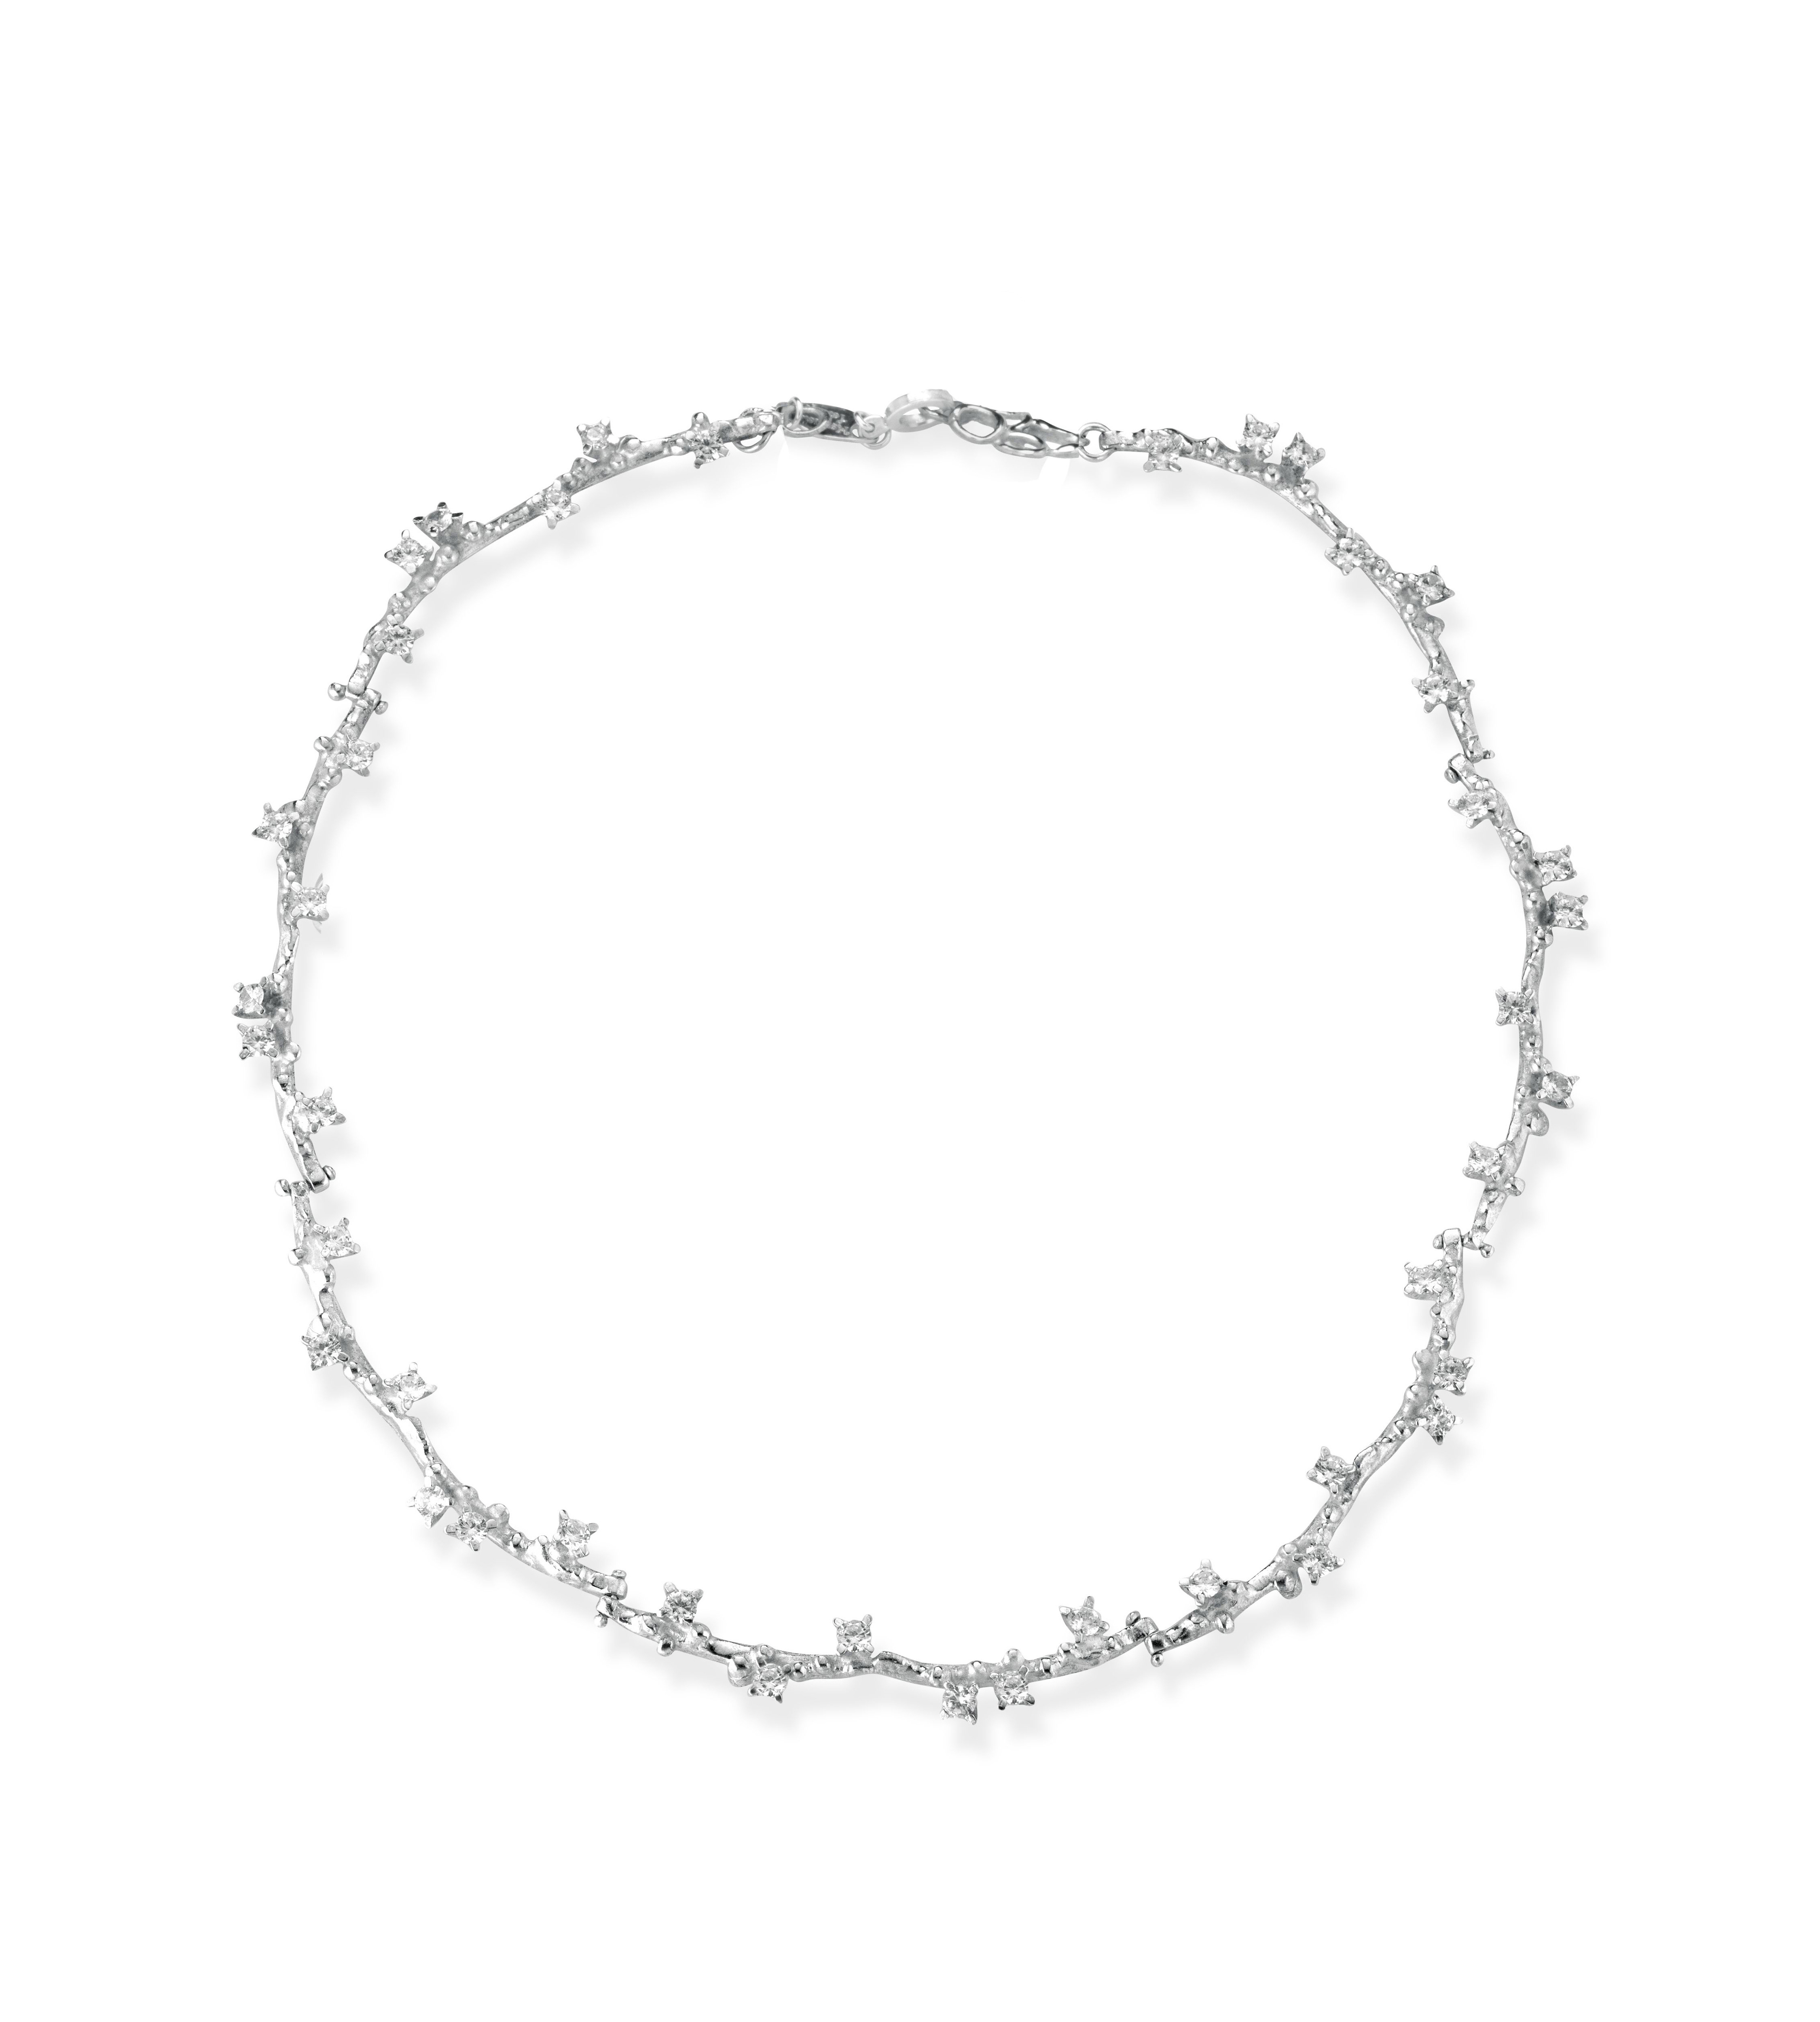 Collier in argento, perla e topazio bianco